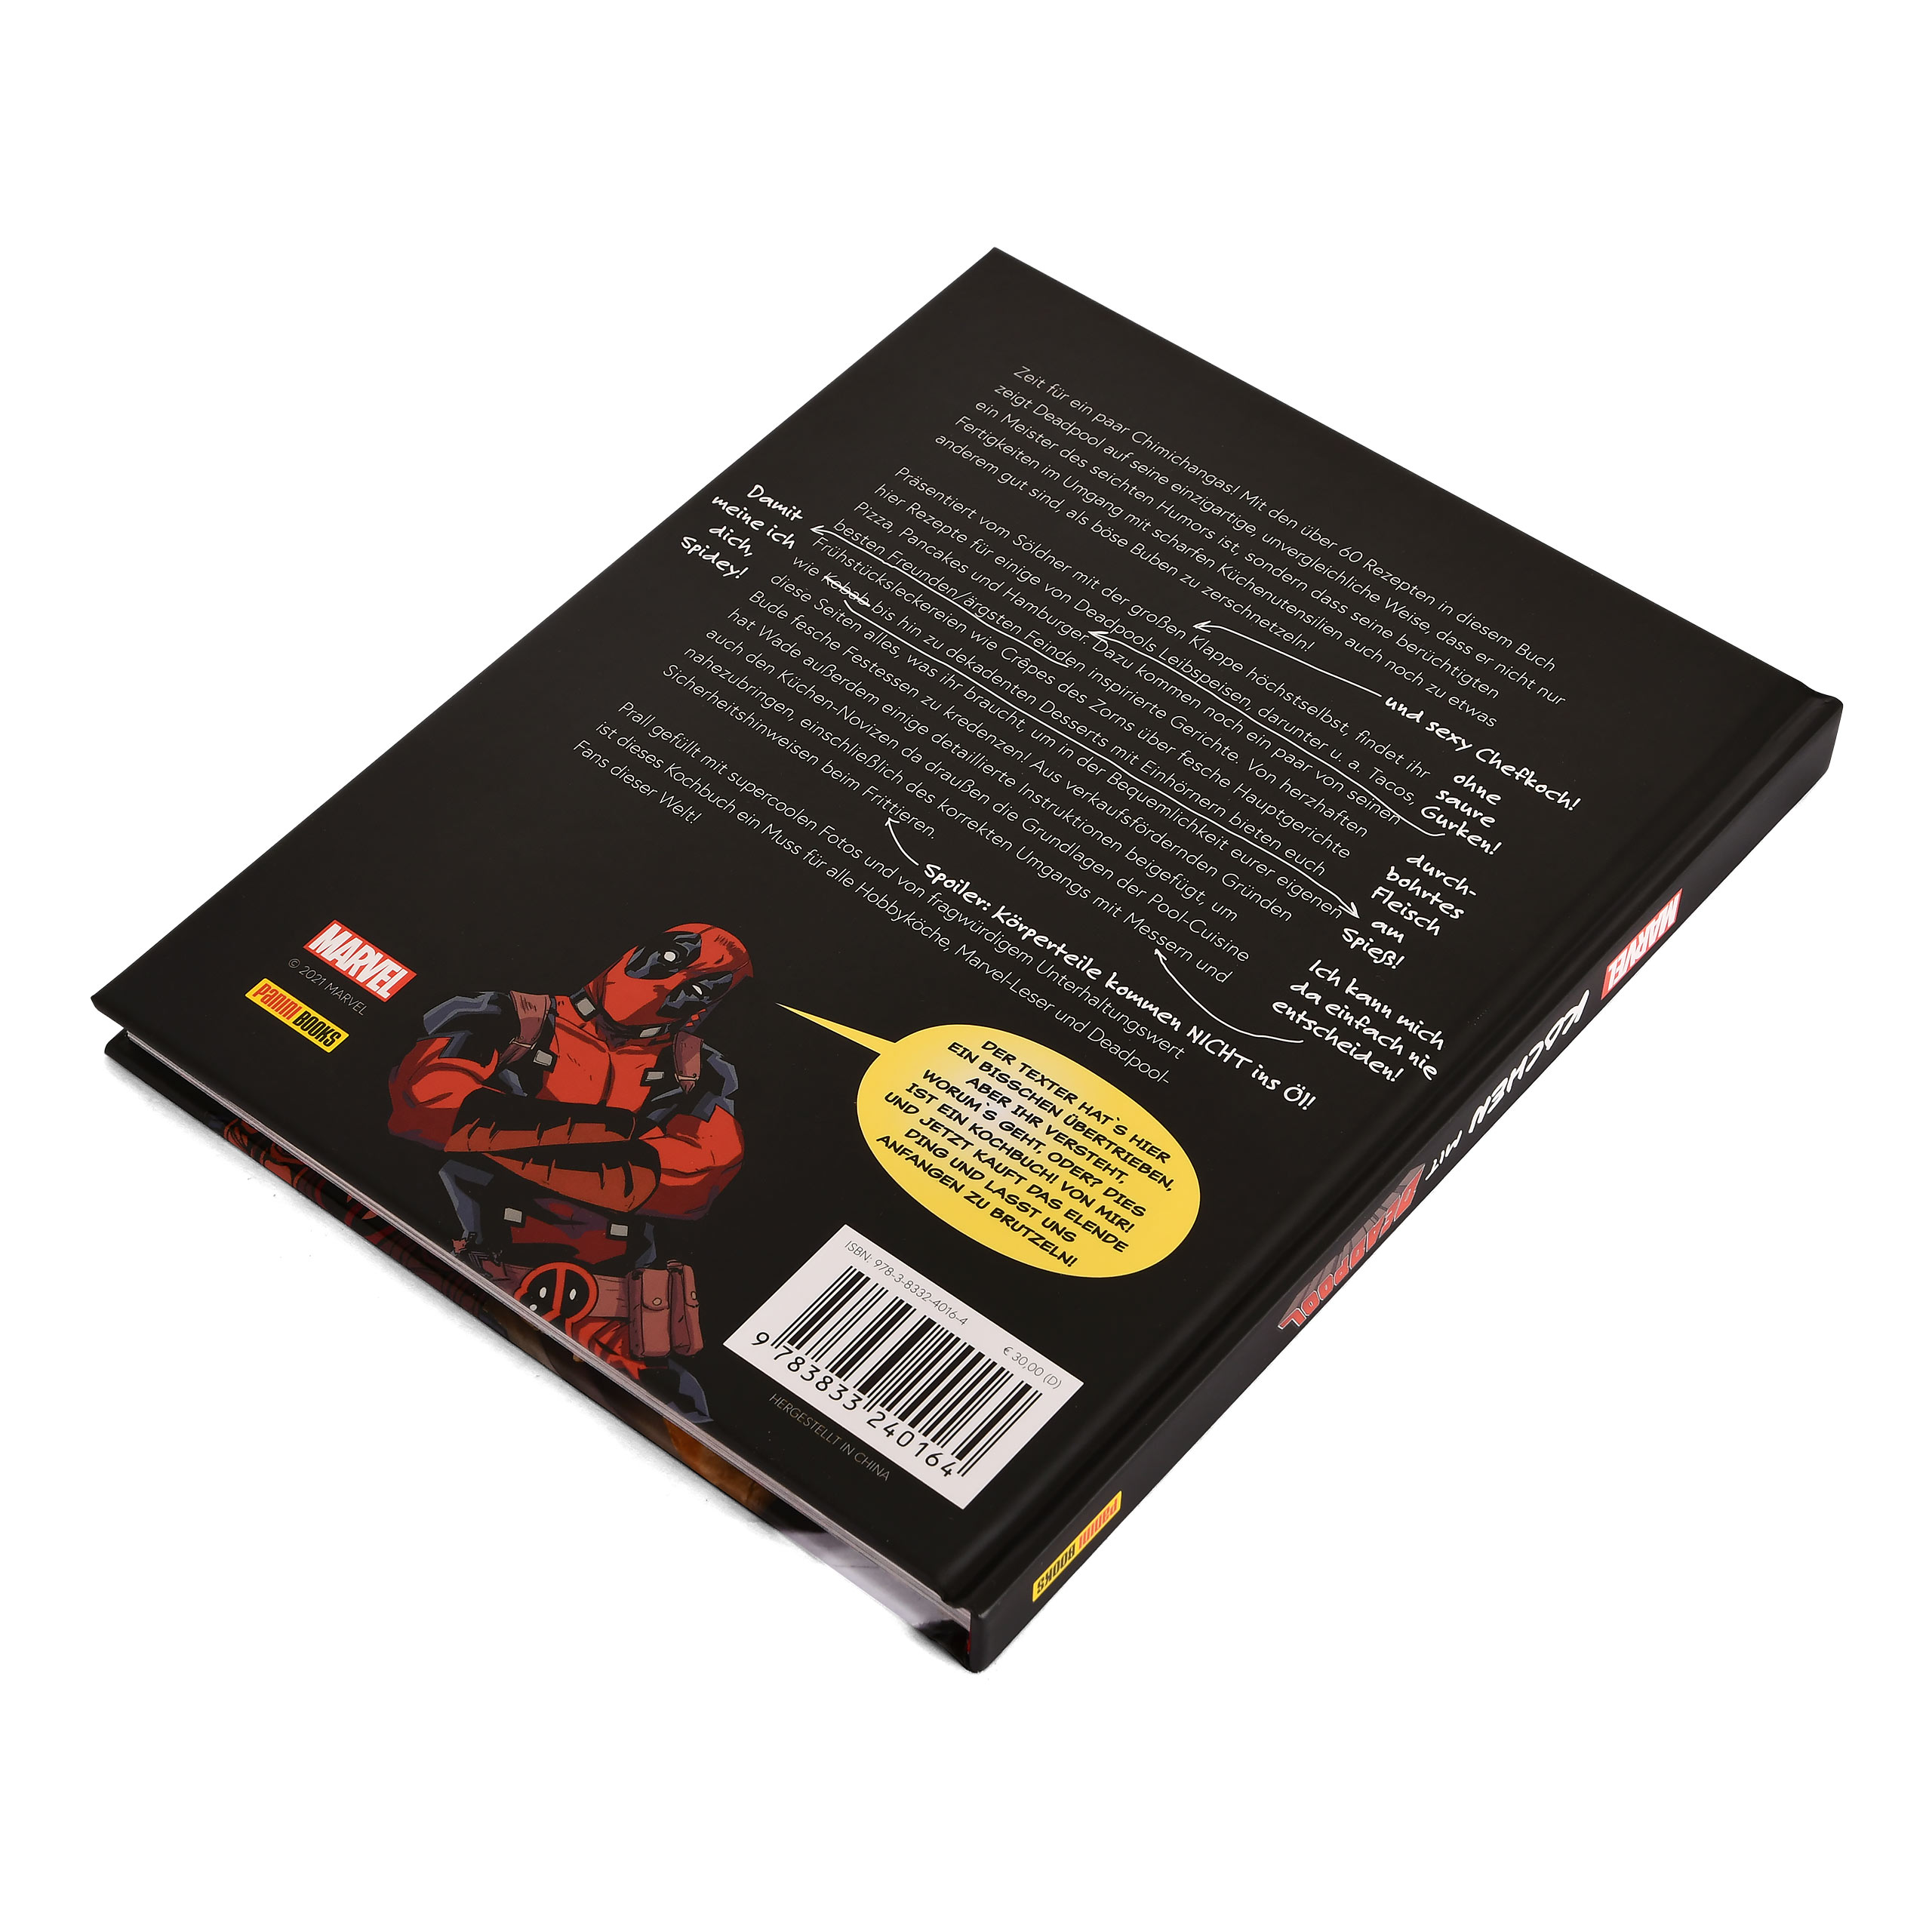 Koken met Deadpool - Het officiële kookboek